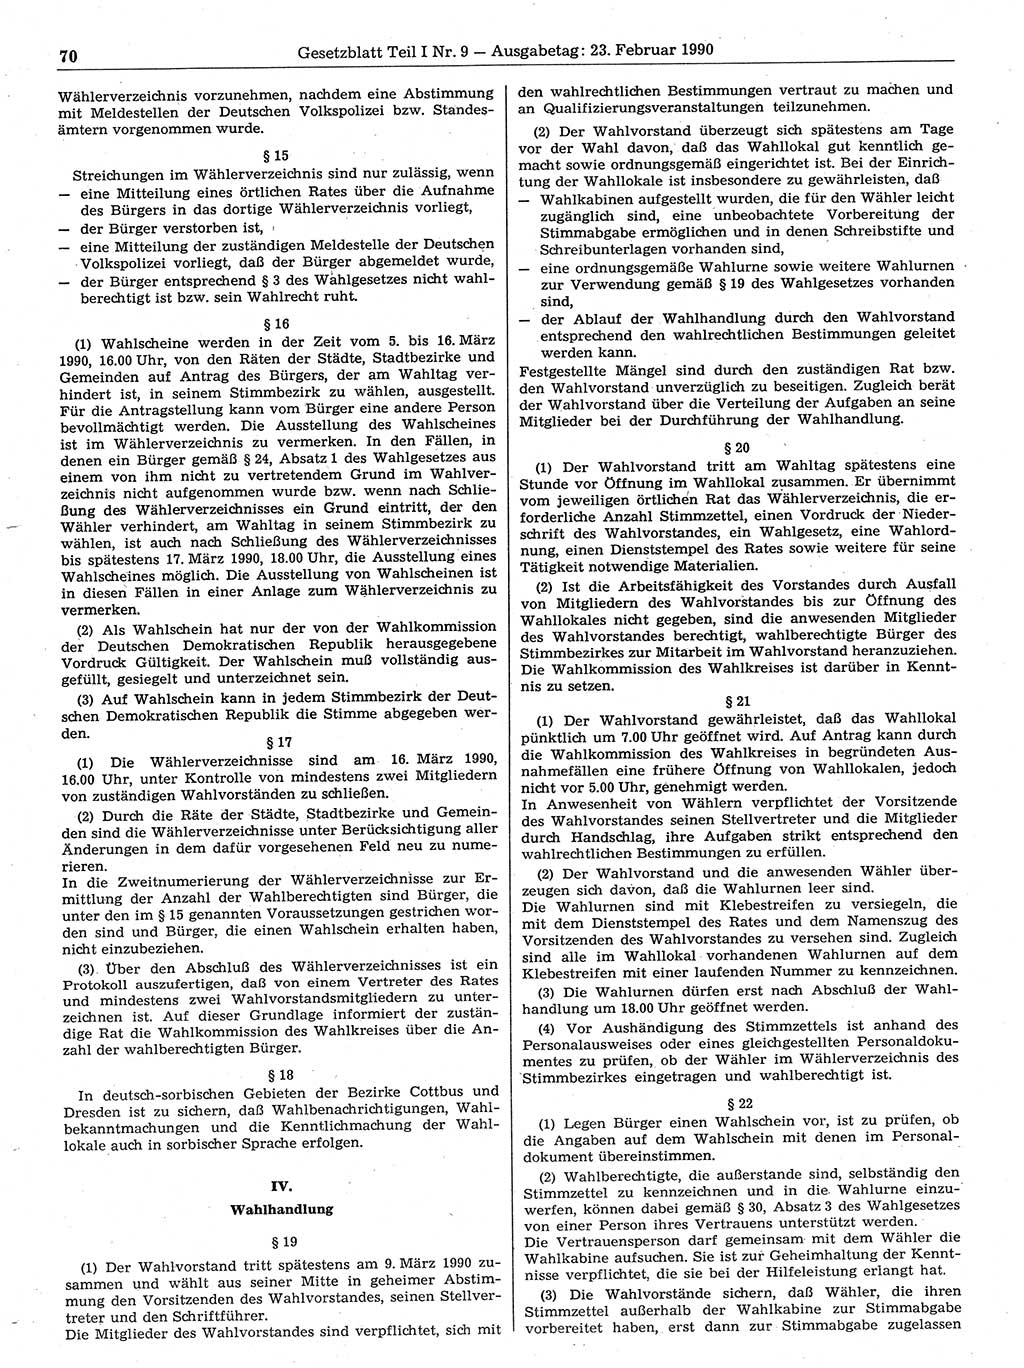 Gesetzblatt (GBl.) der Deutschen Demokratischen Republik (DDR) Teil Ⅰ 1990, Seite 70 (GBl. DDR Ⅰ 1990, S. 70)